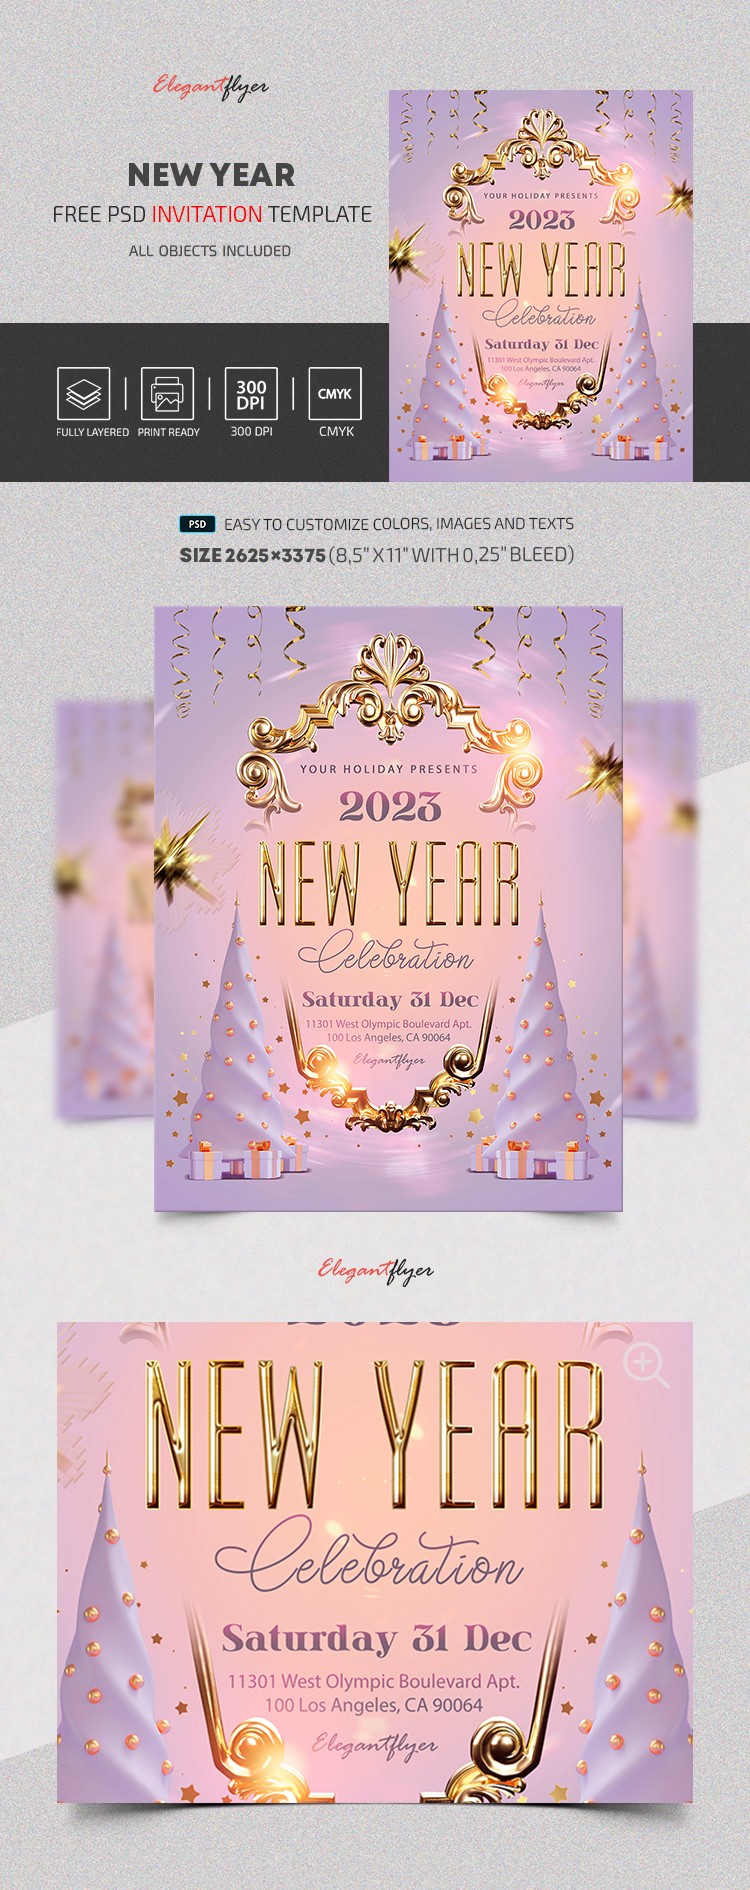 Einladung zum Neujahr by ElegantFlyer